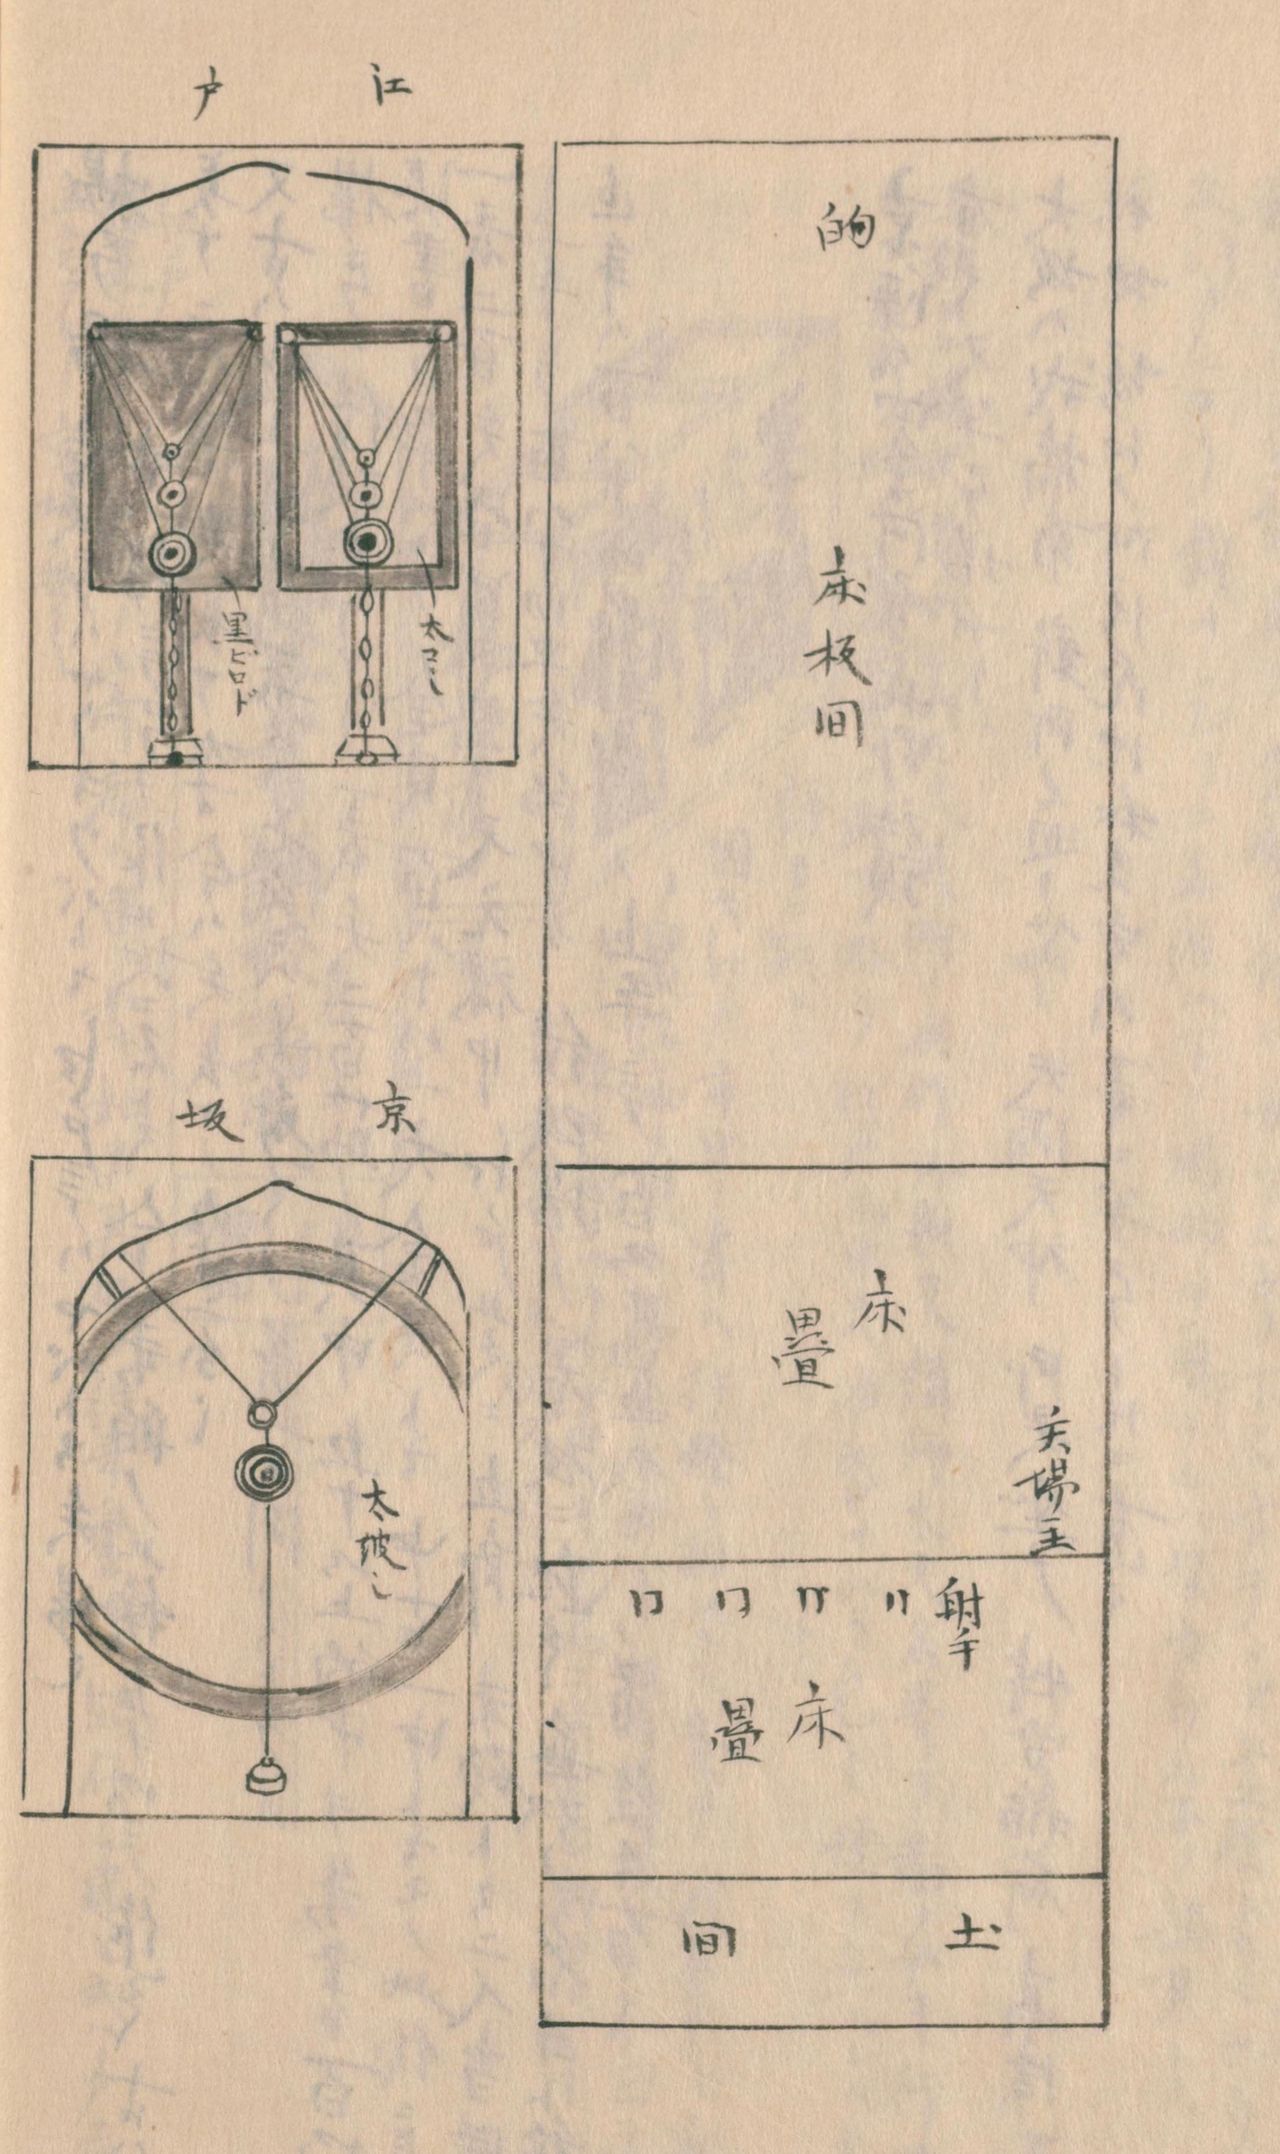 扬弓场格局图（右）和箭靶图（左）。箭靶，上面是江户的，四方形的板子，有大中小三种；下面是京坂的箭靶，只有一个靶。射中之后，下面挂着的铃铛就会叮当作响